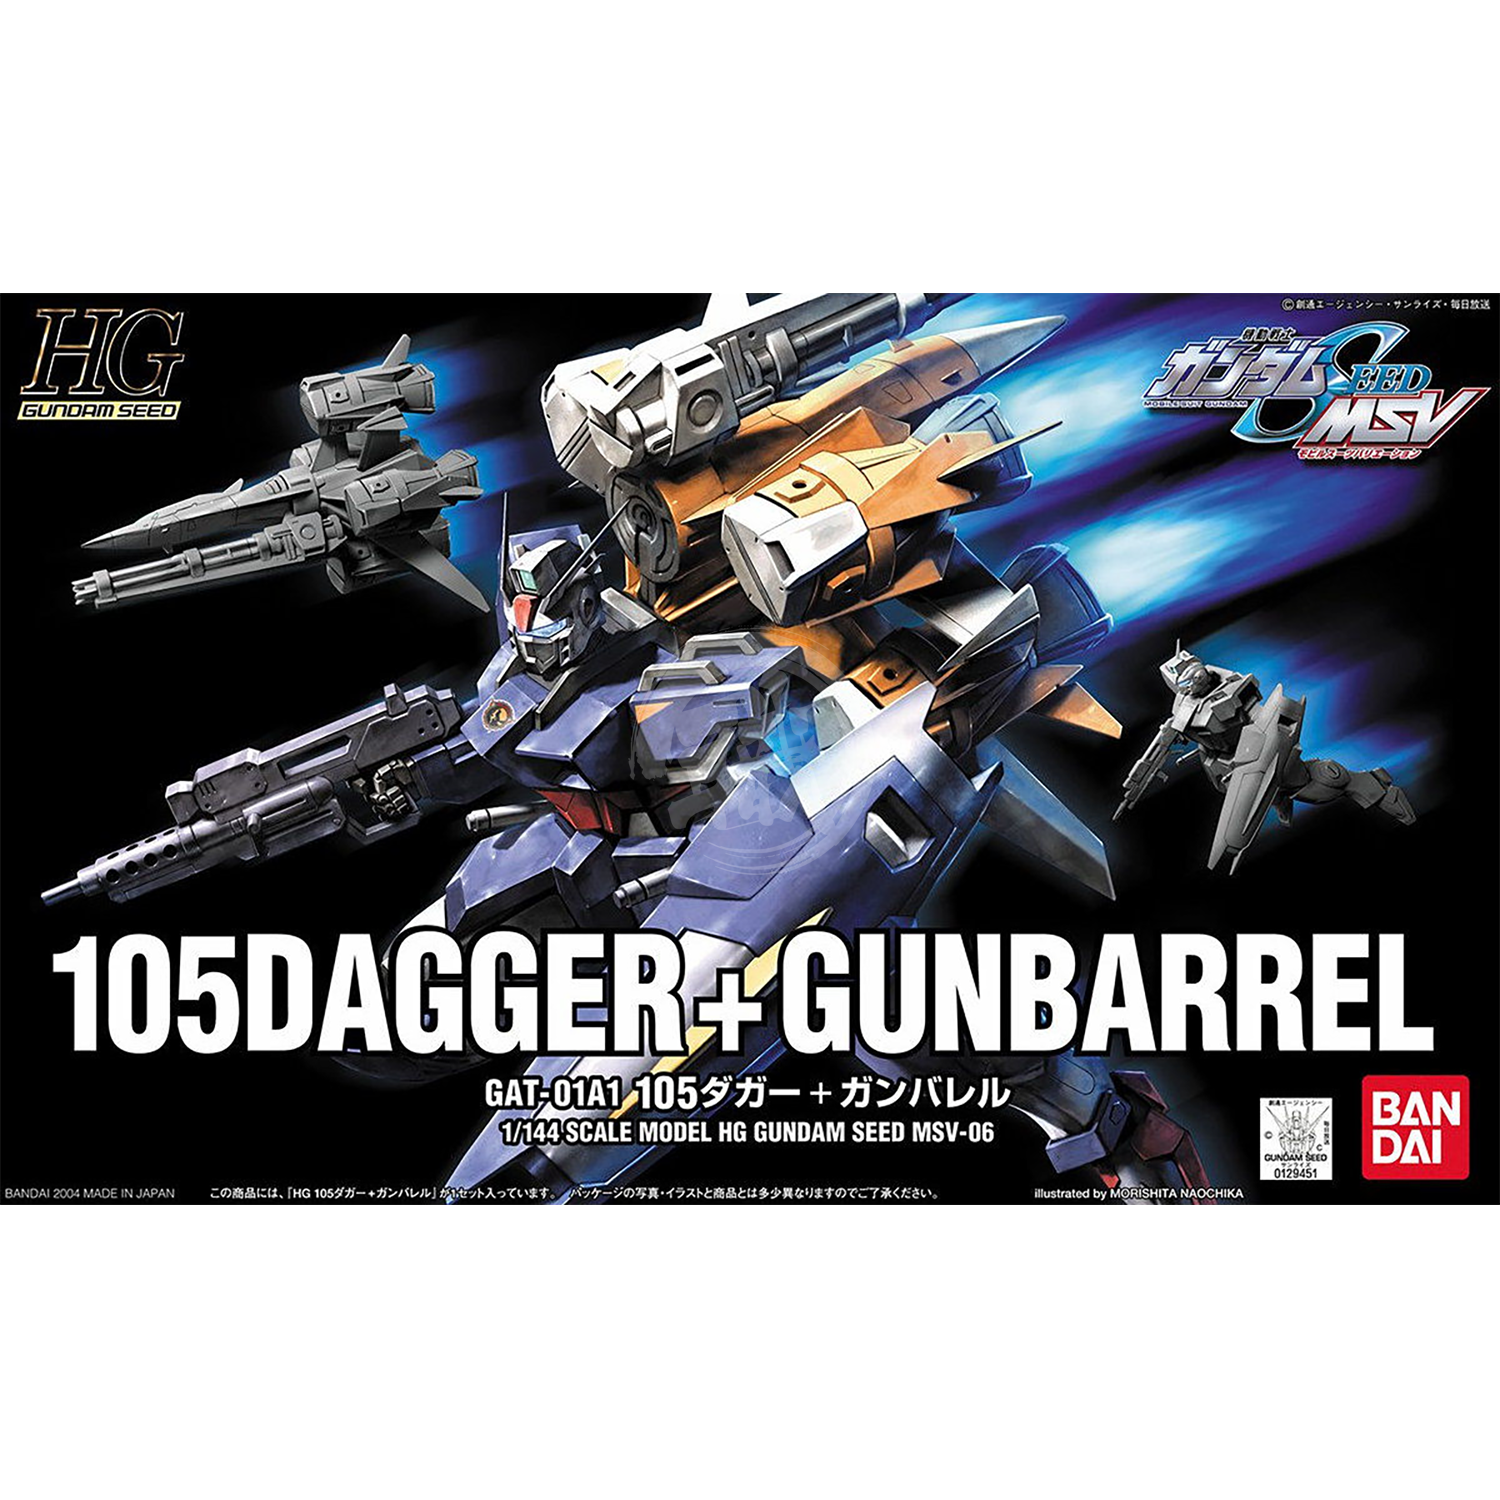 HG 105Dagger + Gunbarrel - ShokuninGunpla